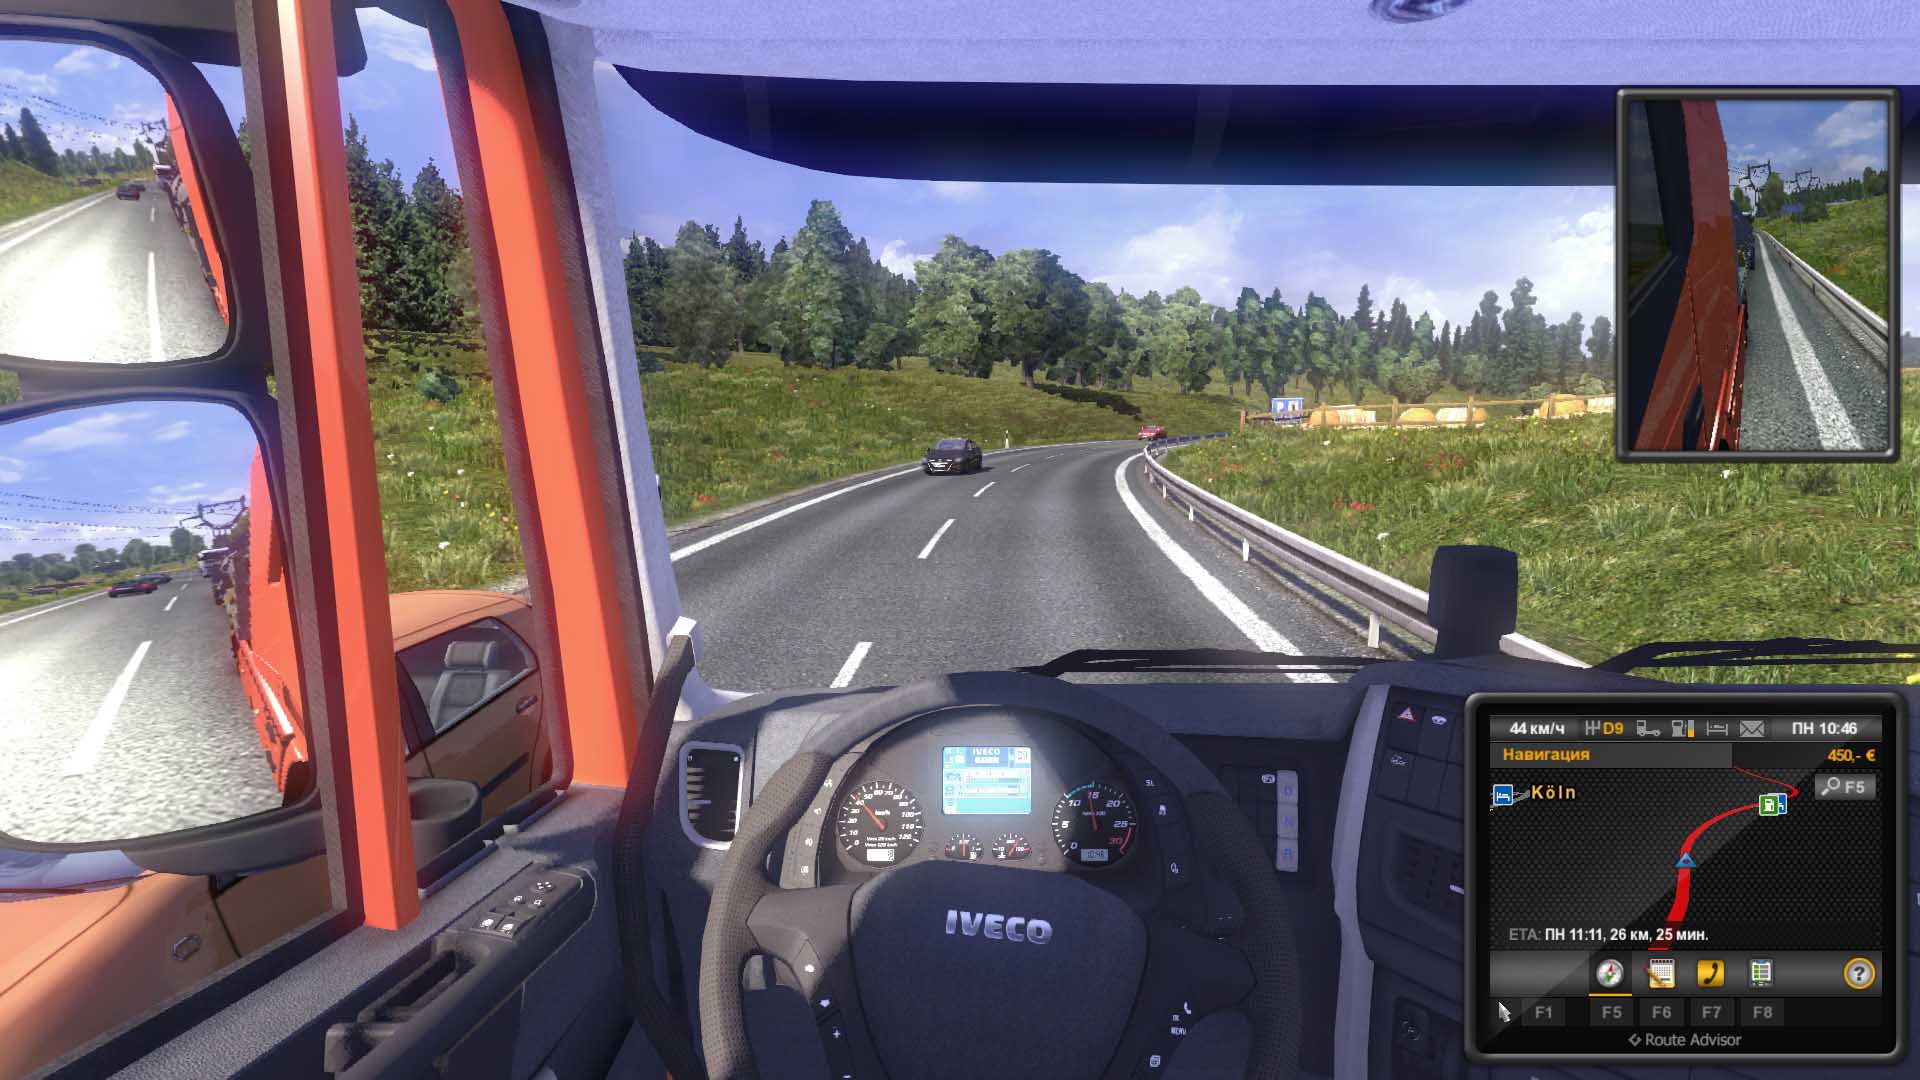 Euro Truck Simulator 2: Gold Bundle (2013/RUS/ENG/MULTi34/RePack) PC